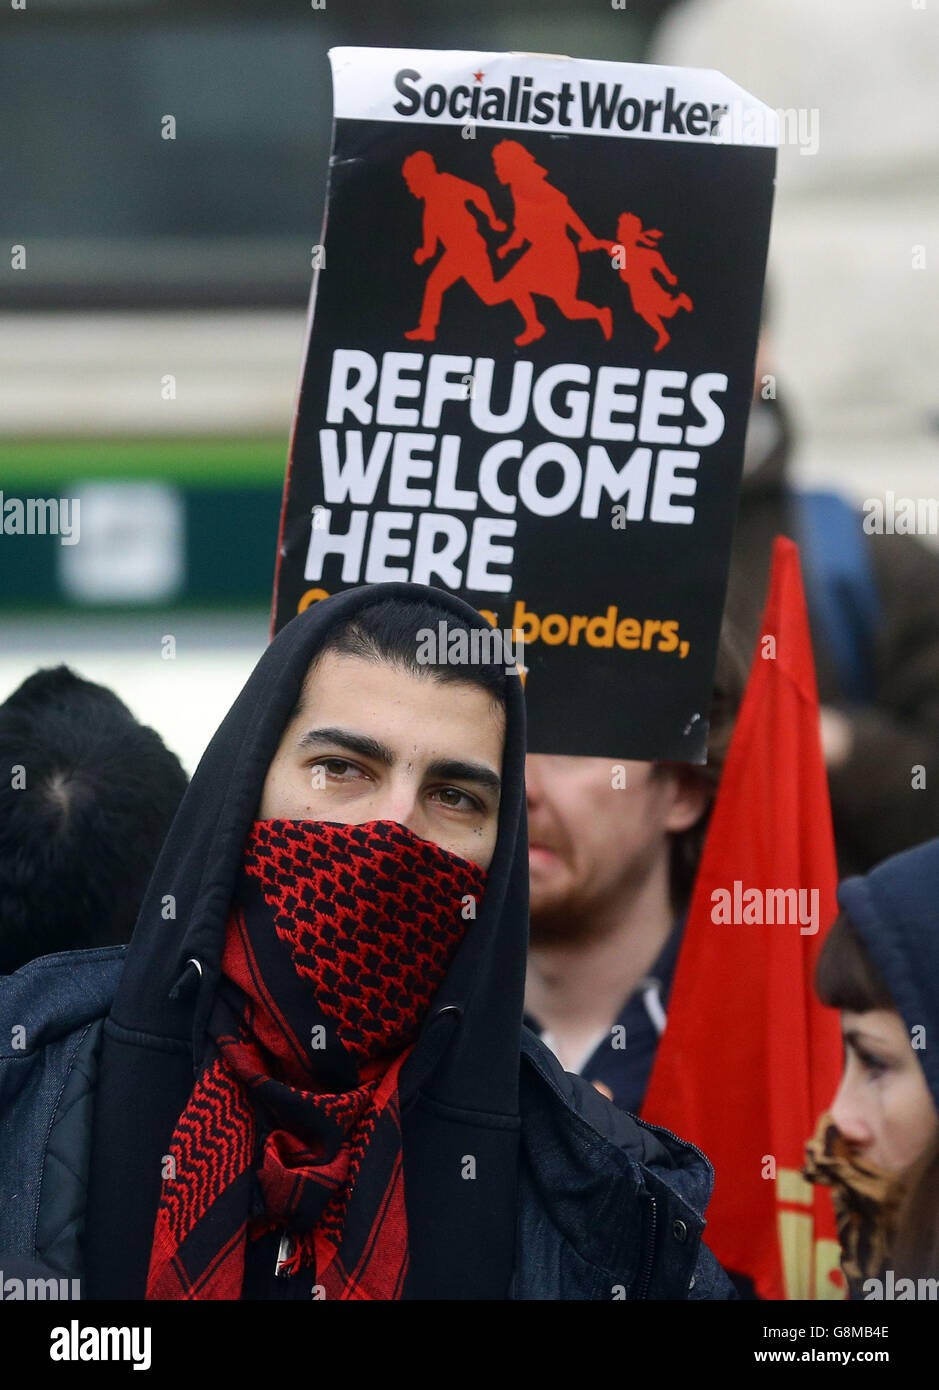 Antifaschistische Demonstranten nehmen an einer Gegendemonstration Teil, während rechtsextreme Gruppen gegen Einwanderung in Dover, Kent, protestieren. Stockfoto